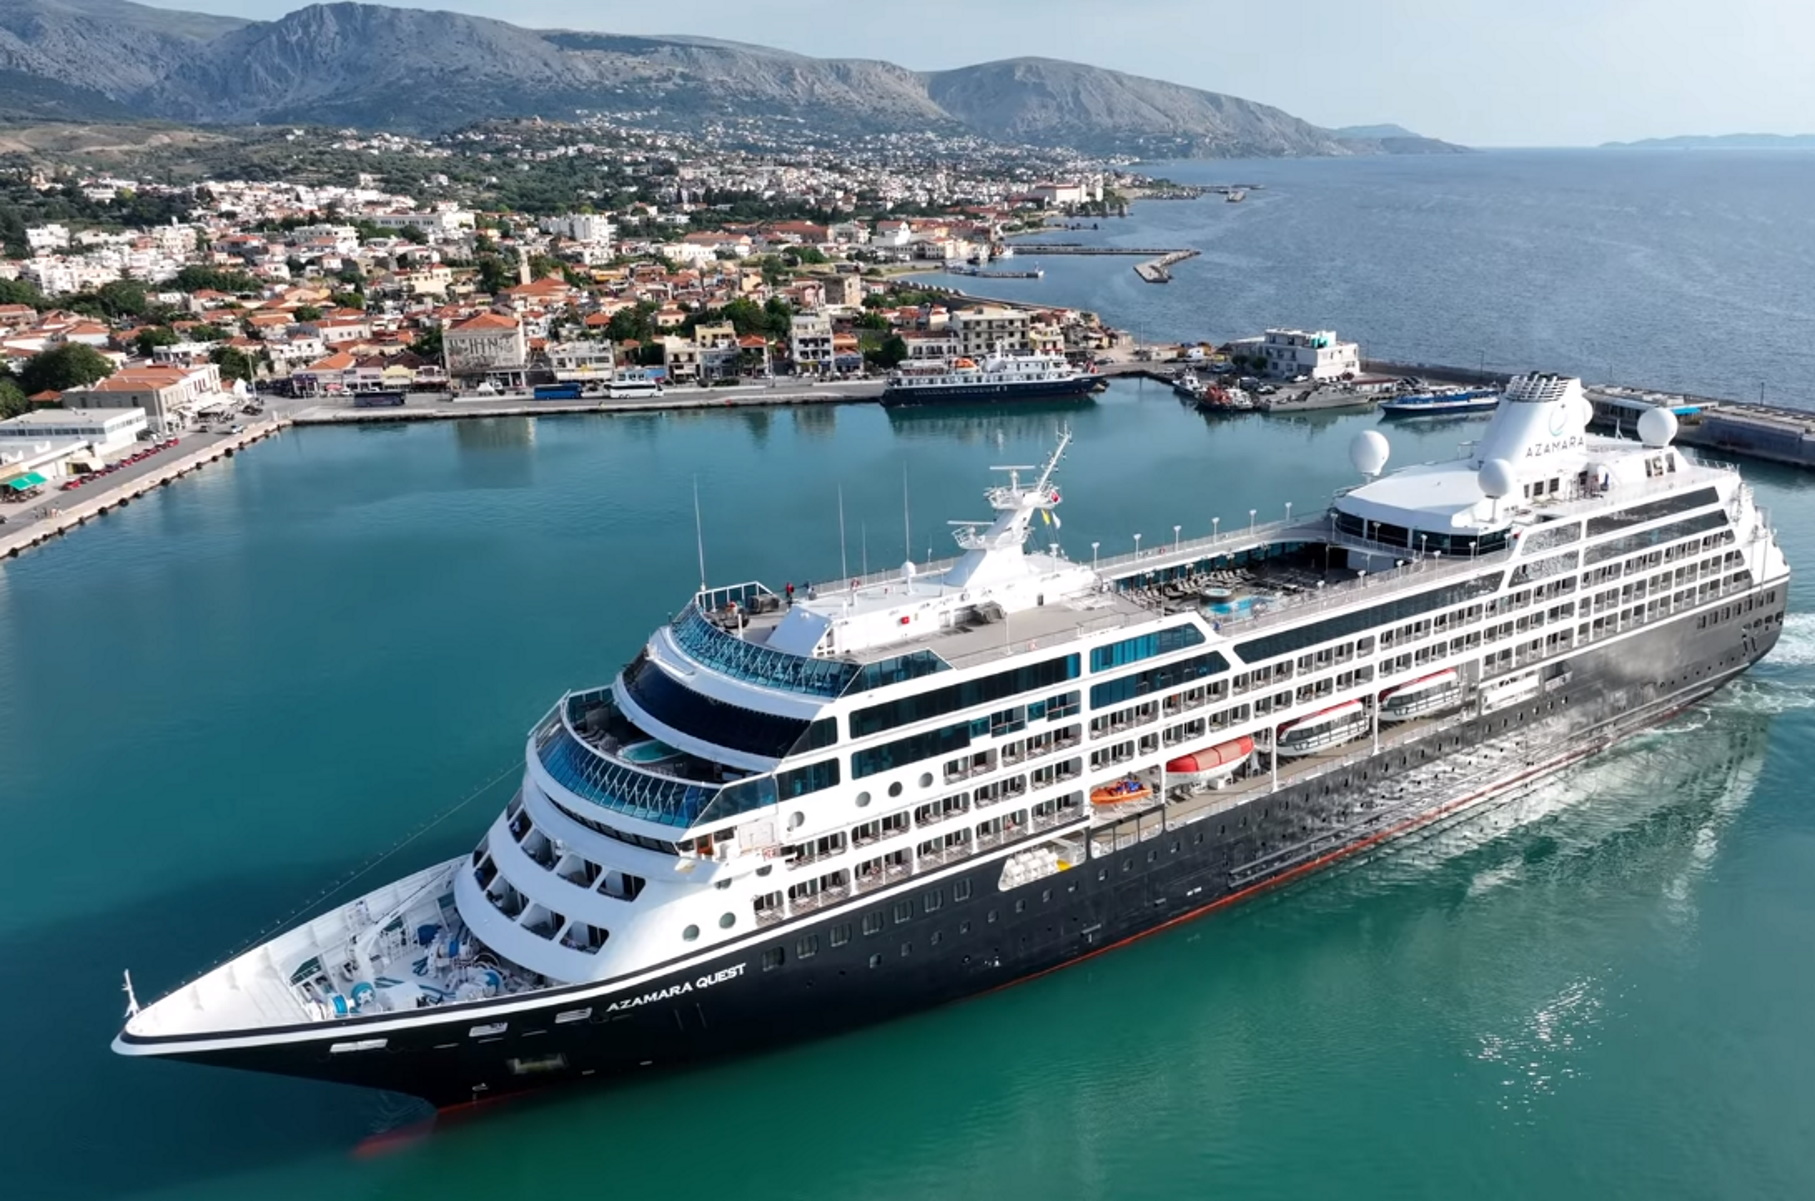 Χίος: Το Azamara Quest στο λιμάνι του νησιού – Βίντεο από την άφιξη του εντυπωσιακού κρουαζιερόπλοιου